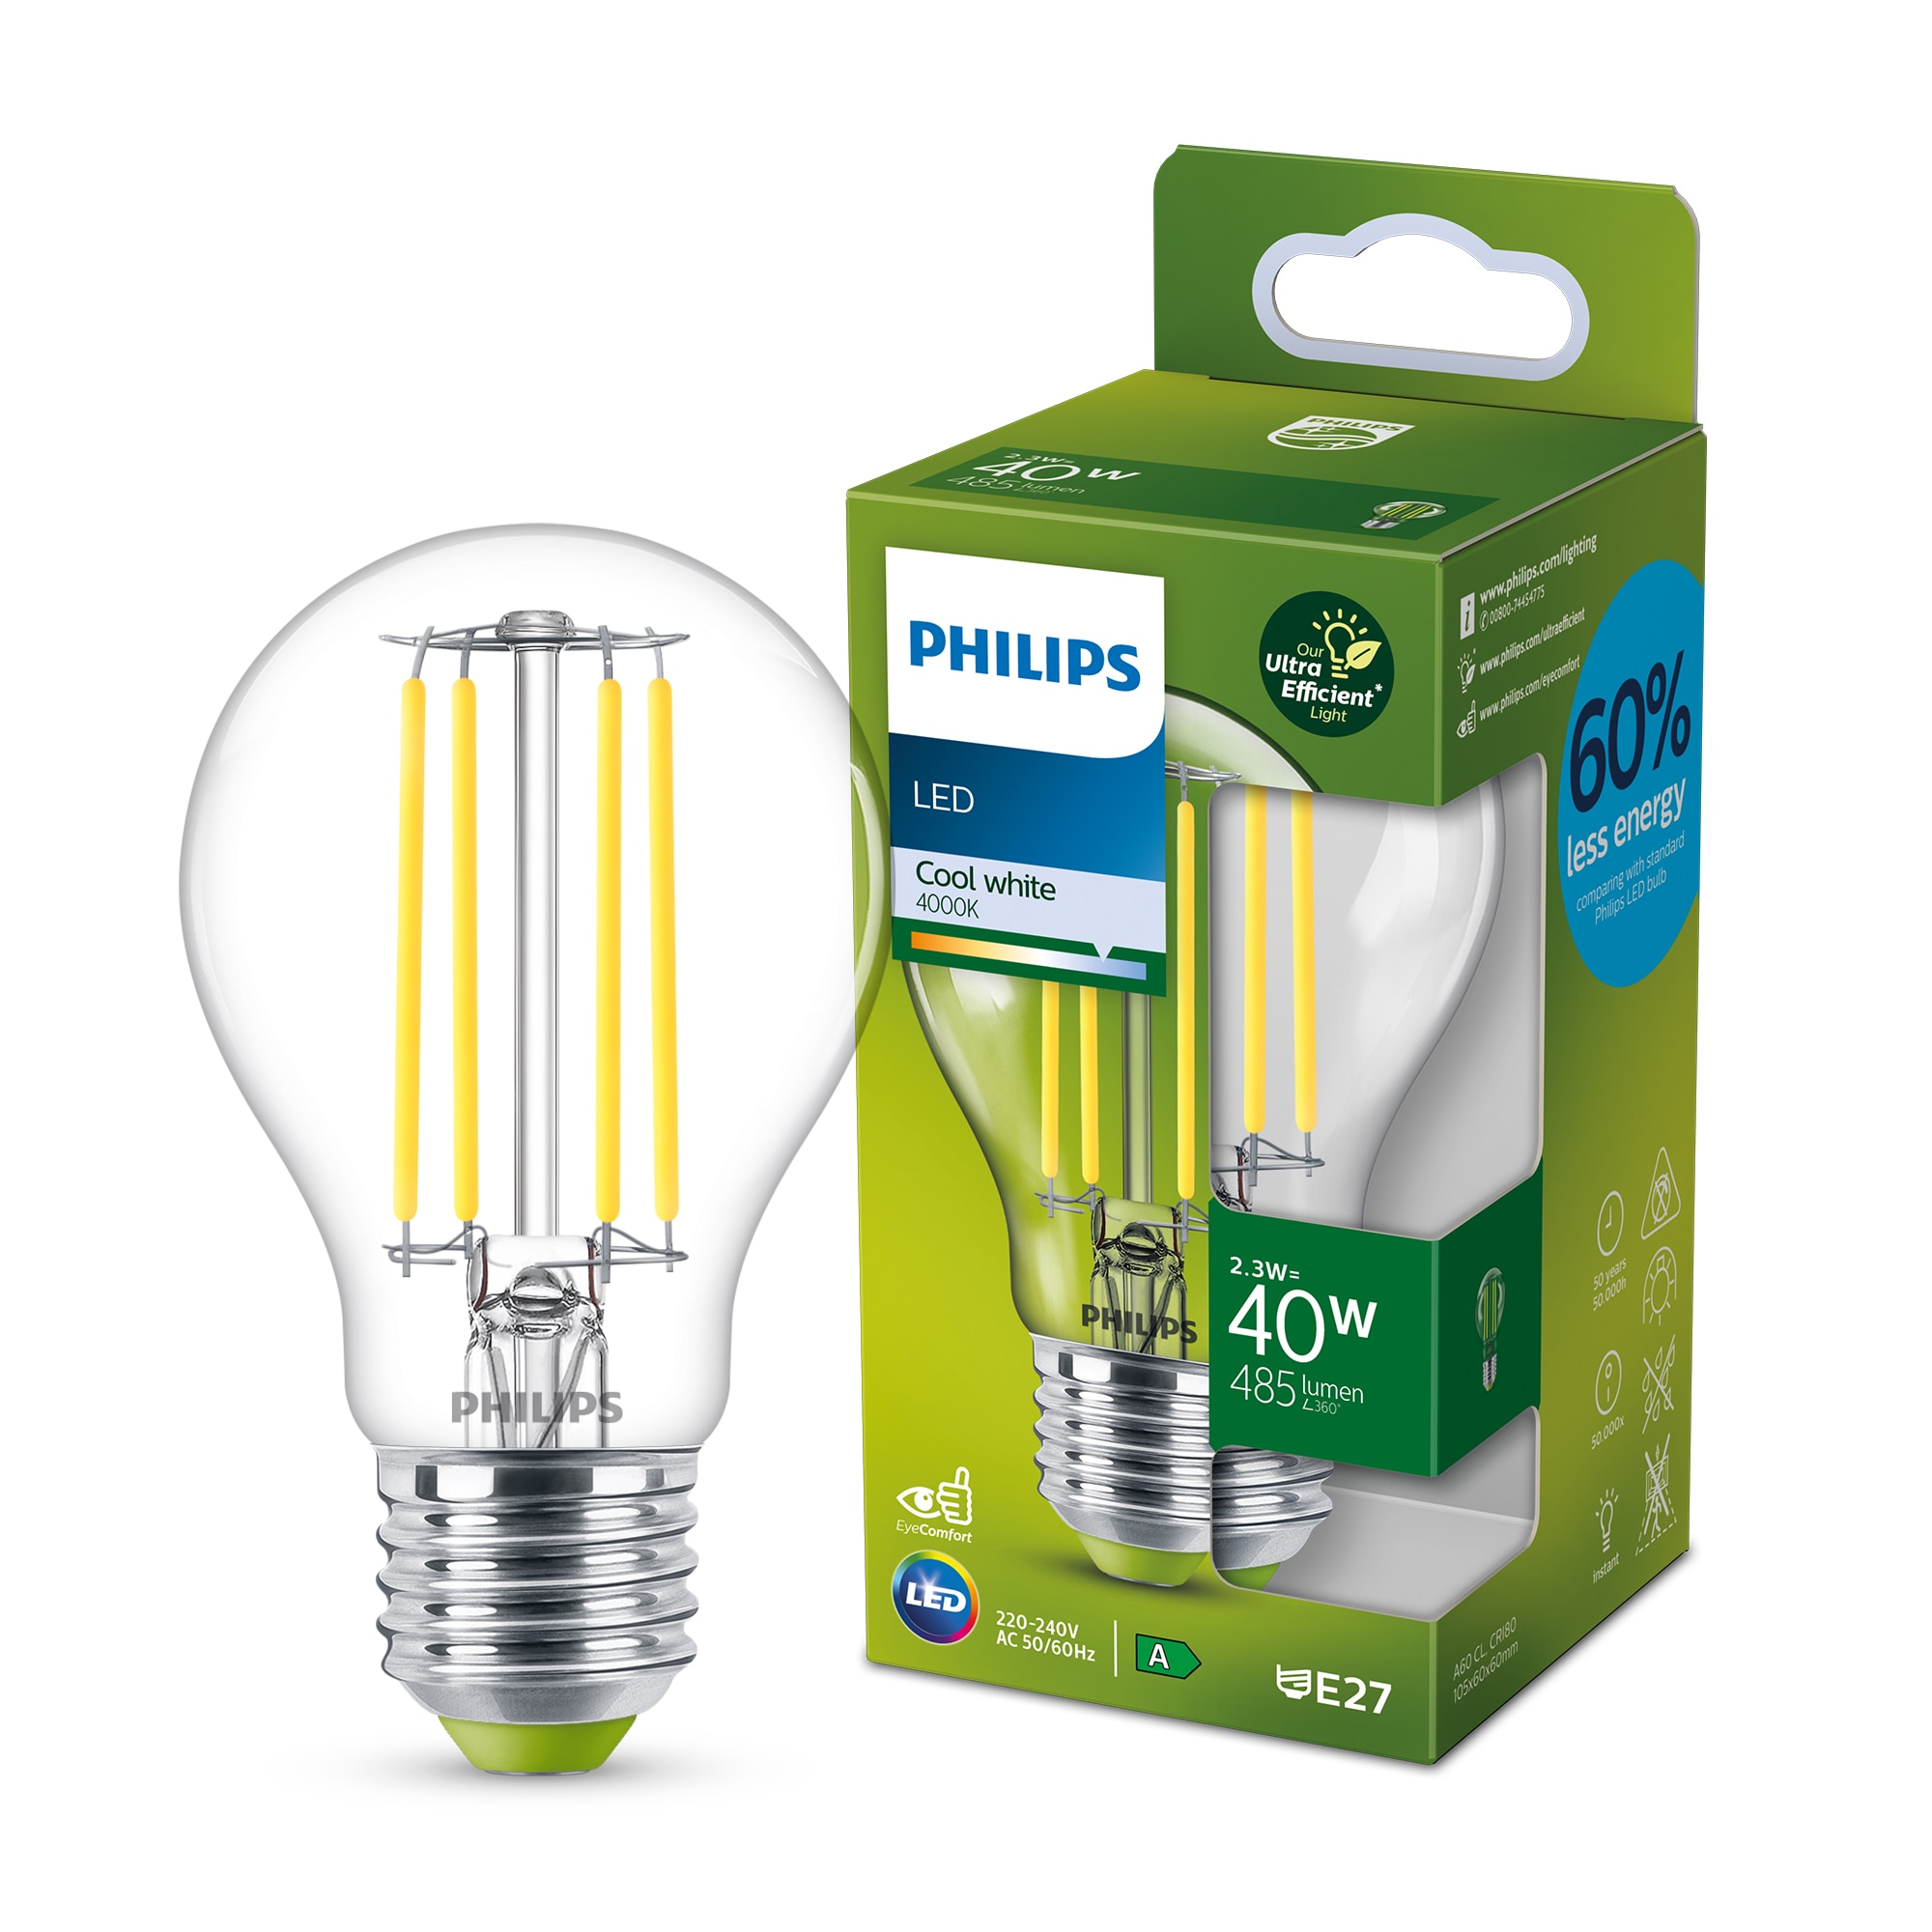 Dor blootstelling Tot stand brengen De meest energiezuinige Philips LED A-klasse lampen | Signify  Bedrijfswebsite